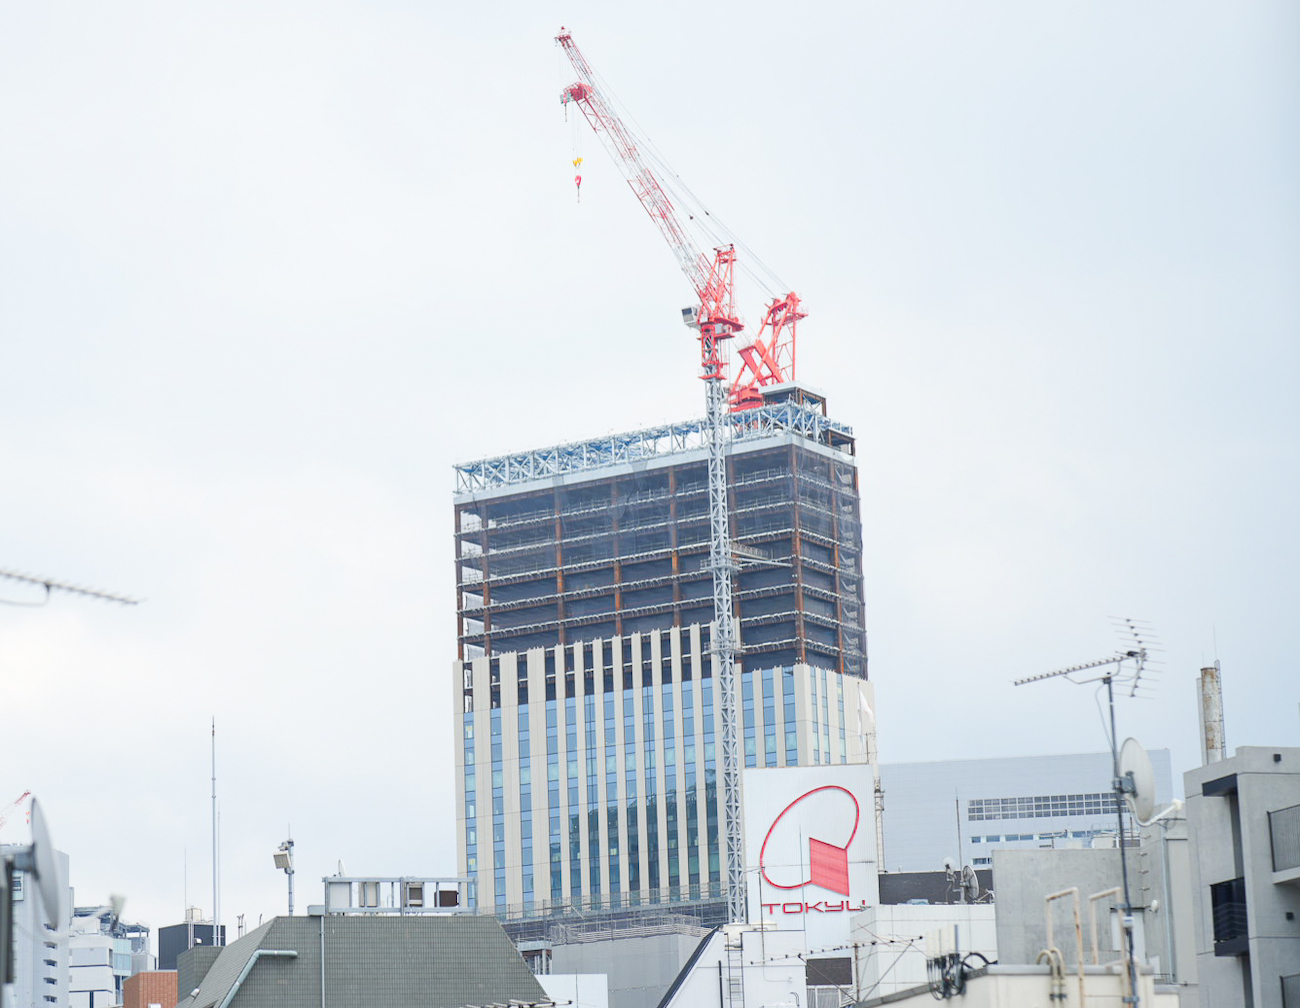 ドン・キホーテ渋谷店跡地の再開発ビル